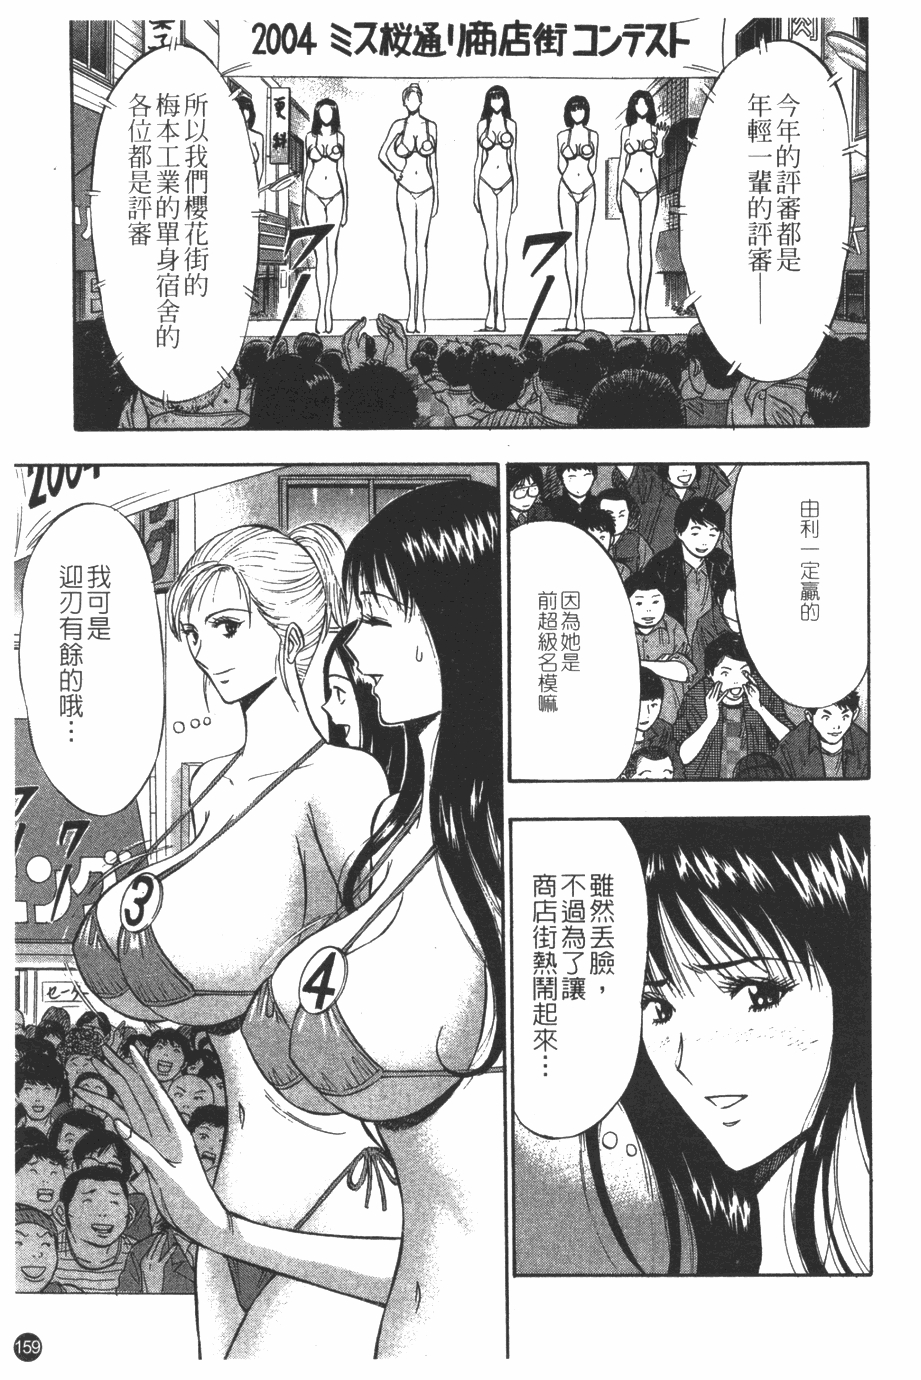 [Nagashima Chosuke] Sakuradoori no Megami - The Venus of SAKURA St. 1 [Chinese] 159